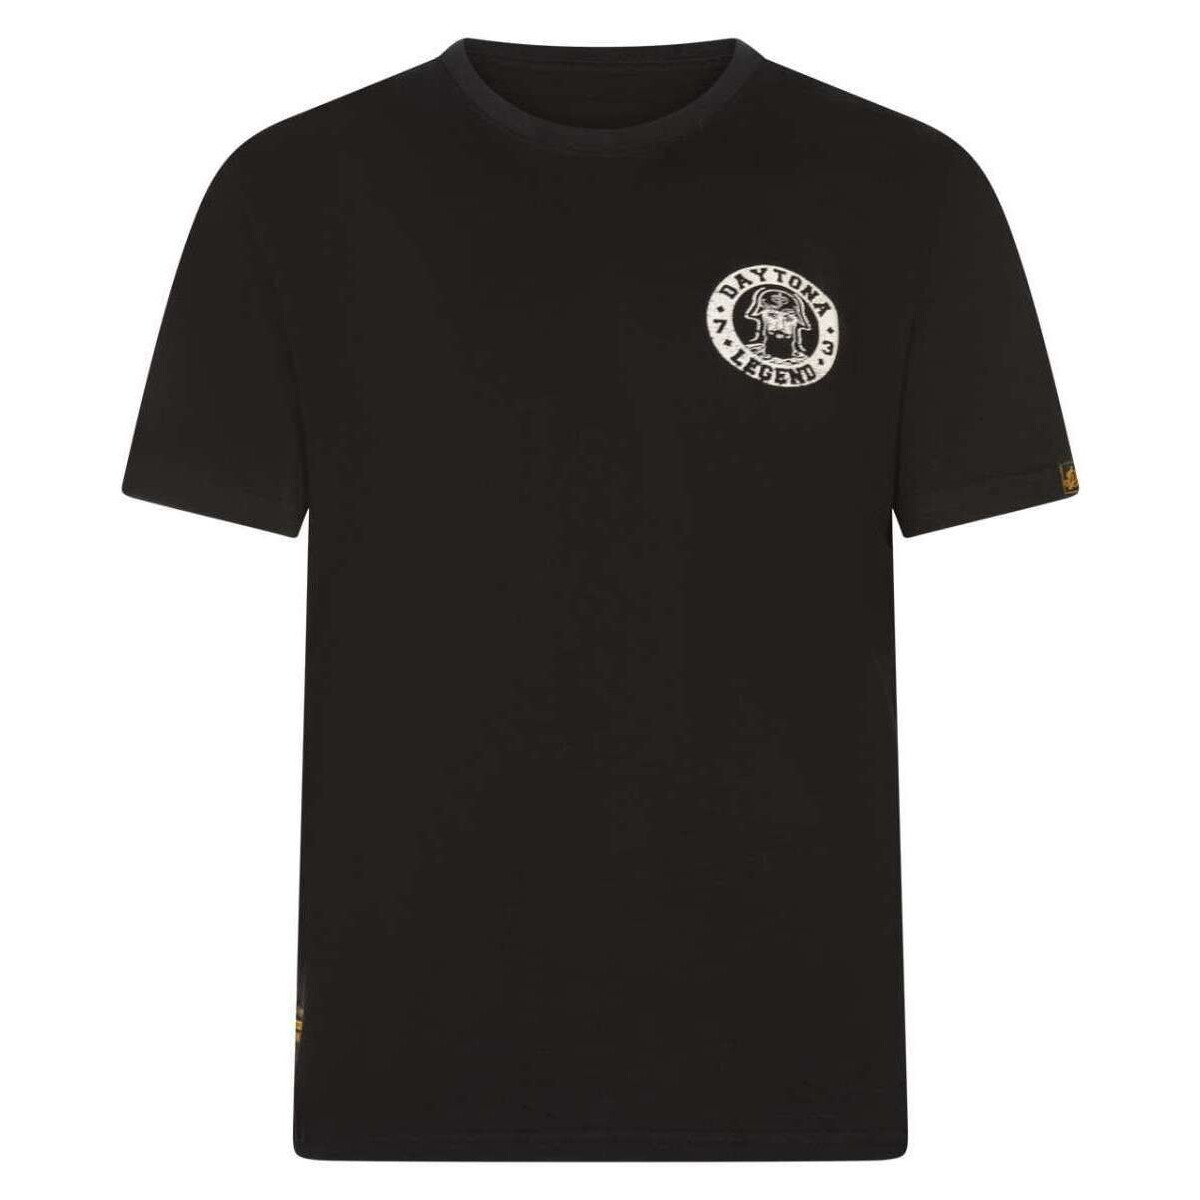 Vêtements Homme T-shirts manches courtes Daytona 164025VTPE24 Noir